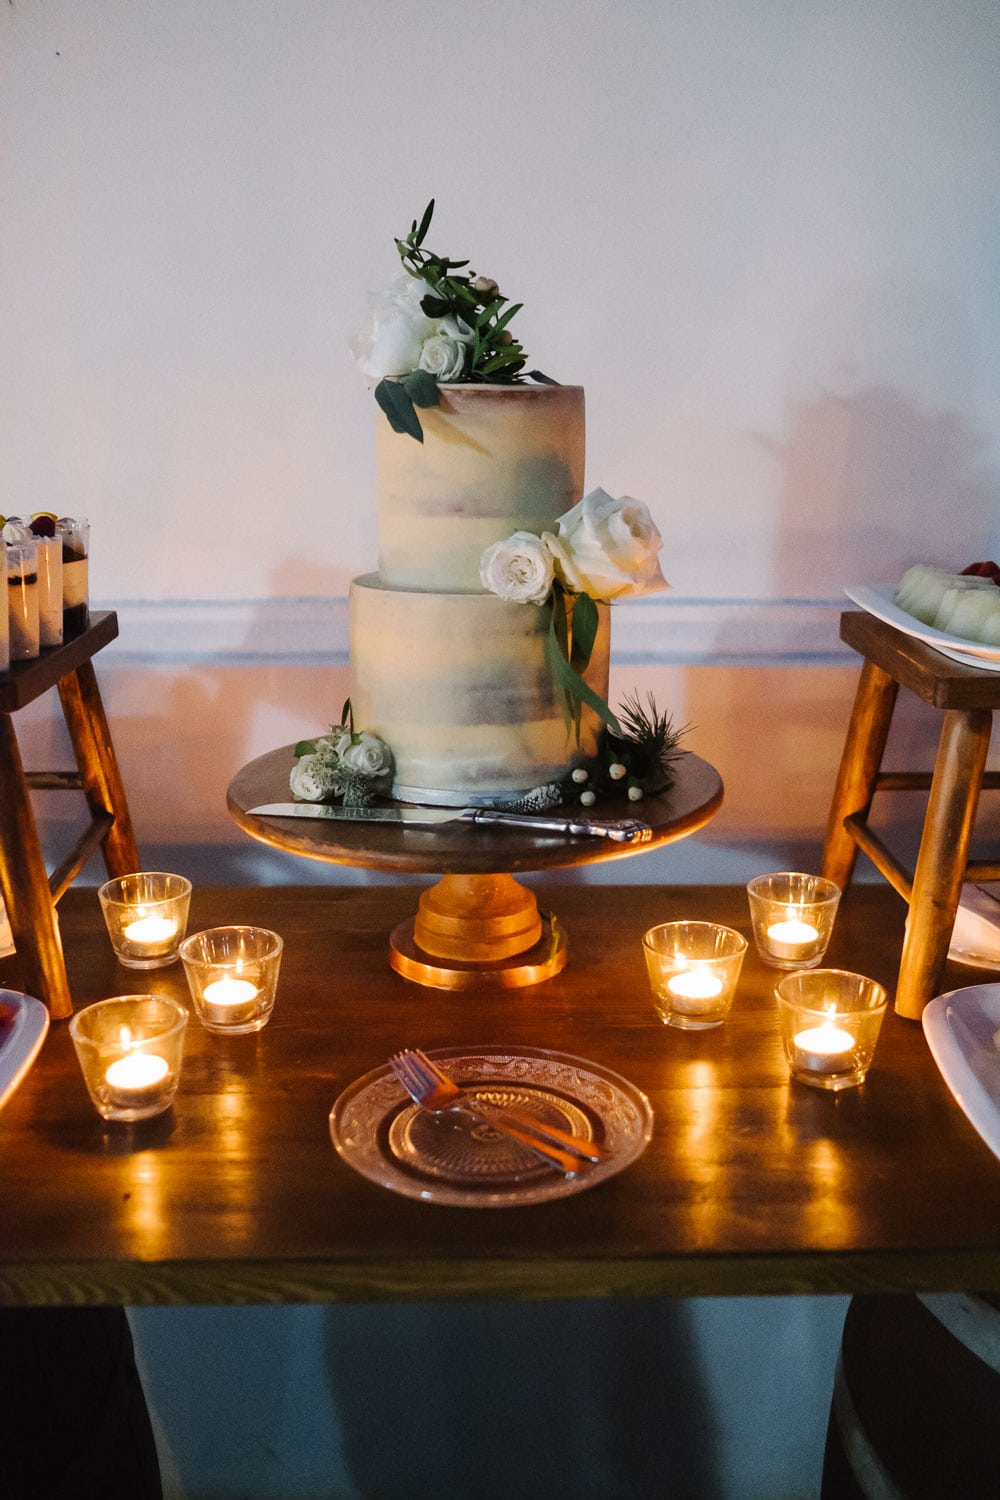 wedding cake wedding table decoration Ronda Mountain resort boho wedding #weddingdecor #olivedecoration #rusticwedding #bohowedding #rondamountainresort jesuscaballero.com